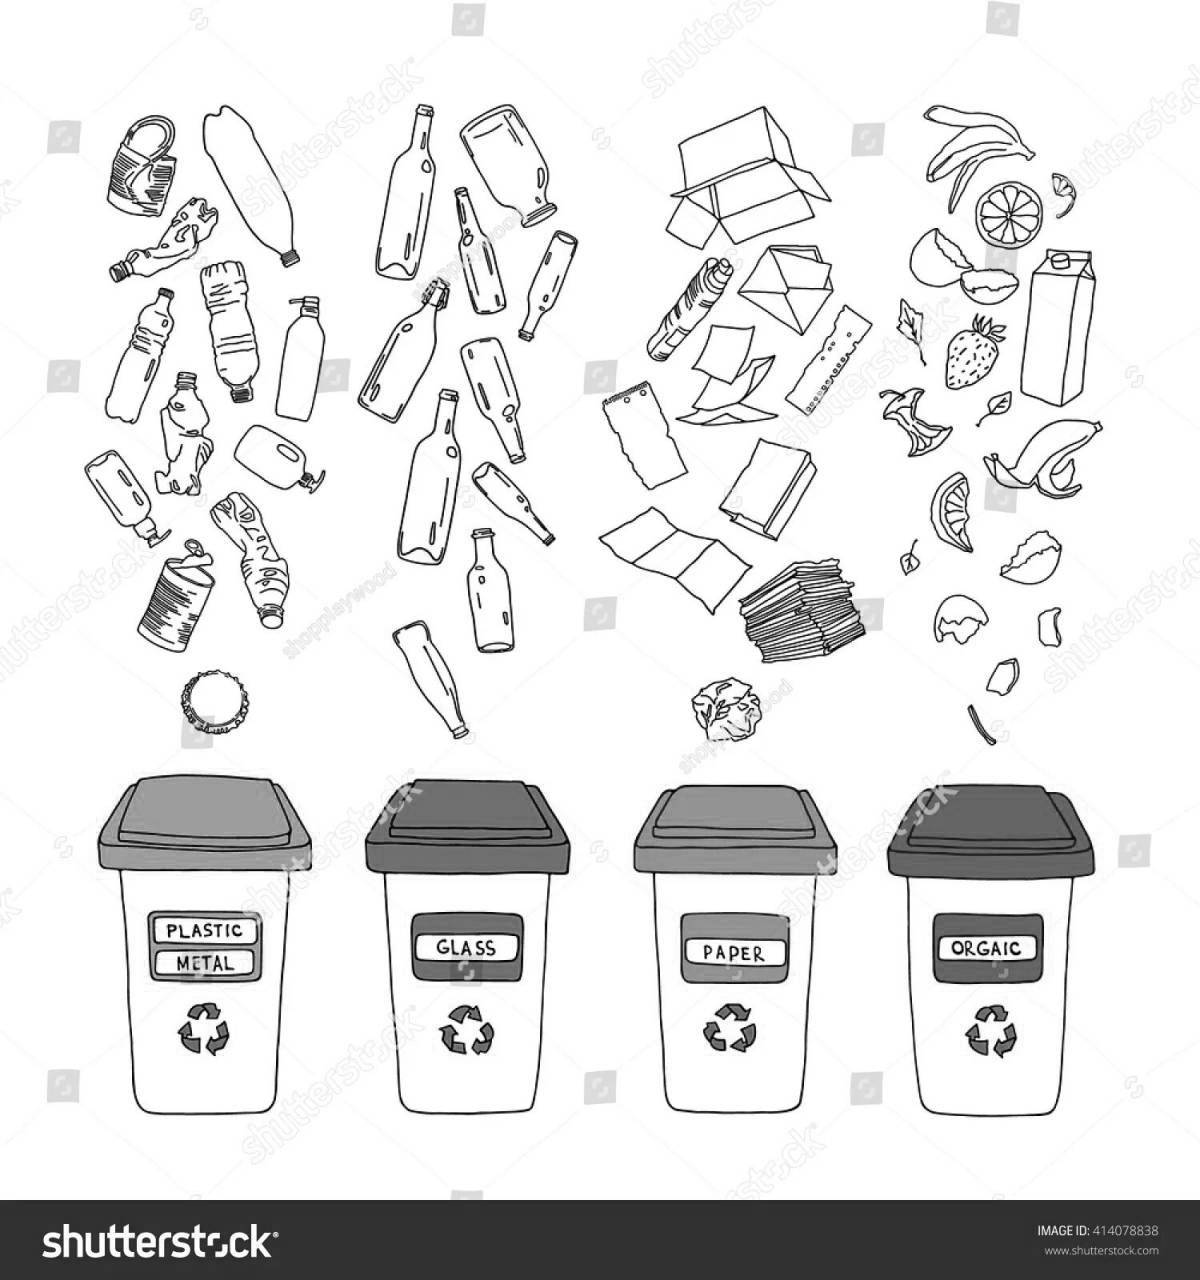 Увлекательная раскраска «сортировка мусора» для самых маленьких